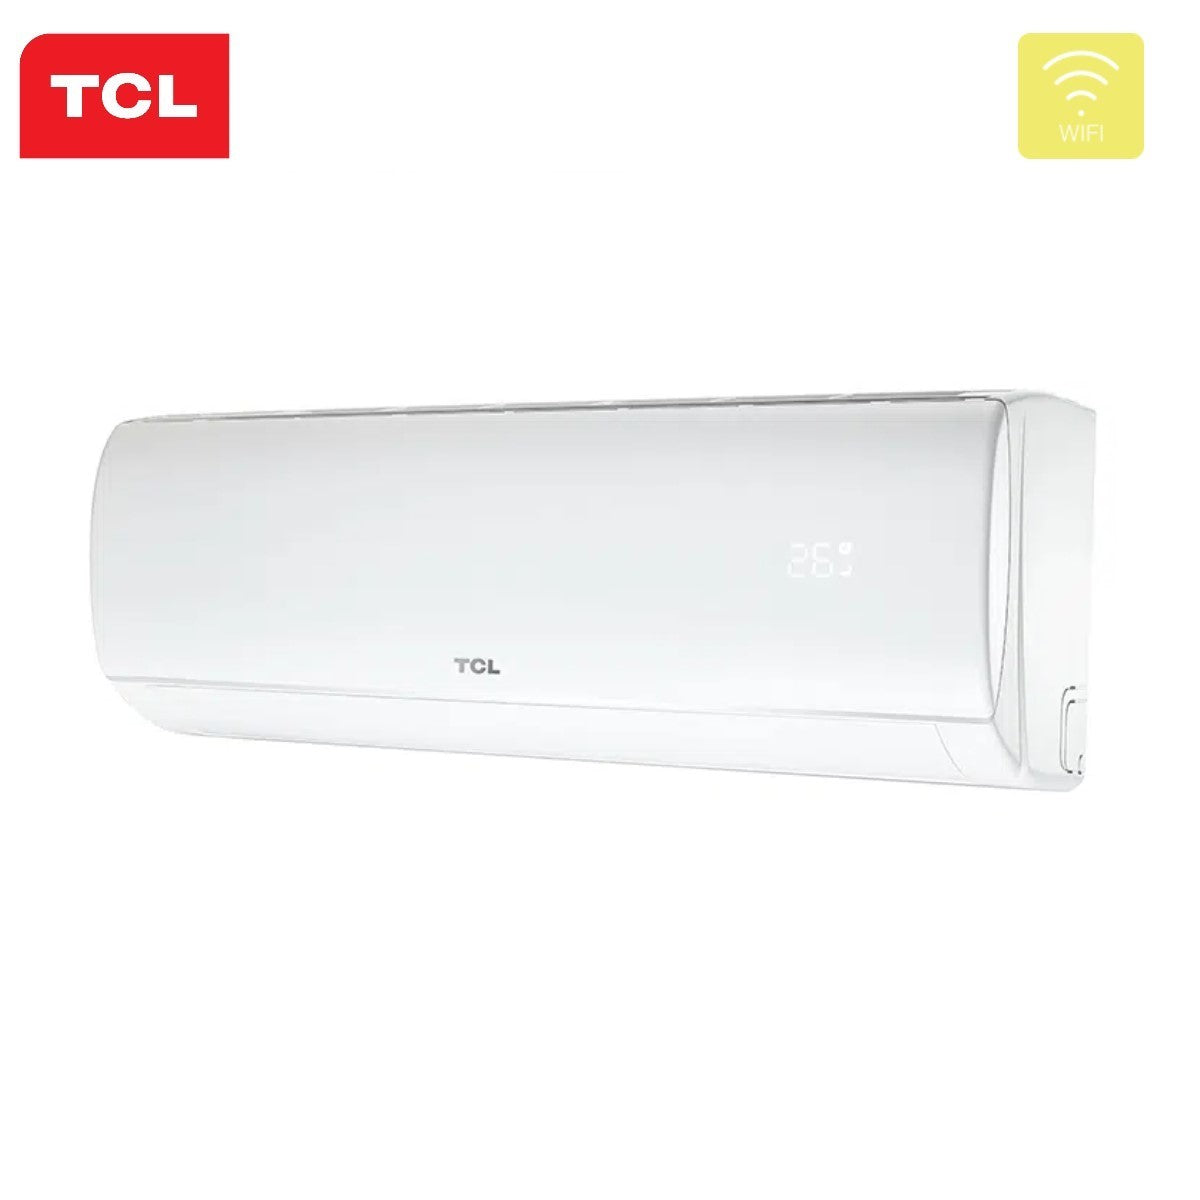 immagine-7-tcl-climatizzatore-condizionatore-tcl-dual-split-inverter-serie-elite-912-con-mt1820-r-32-wi-fi-integrato-900012000